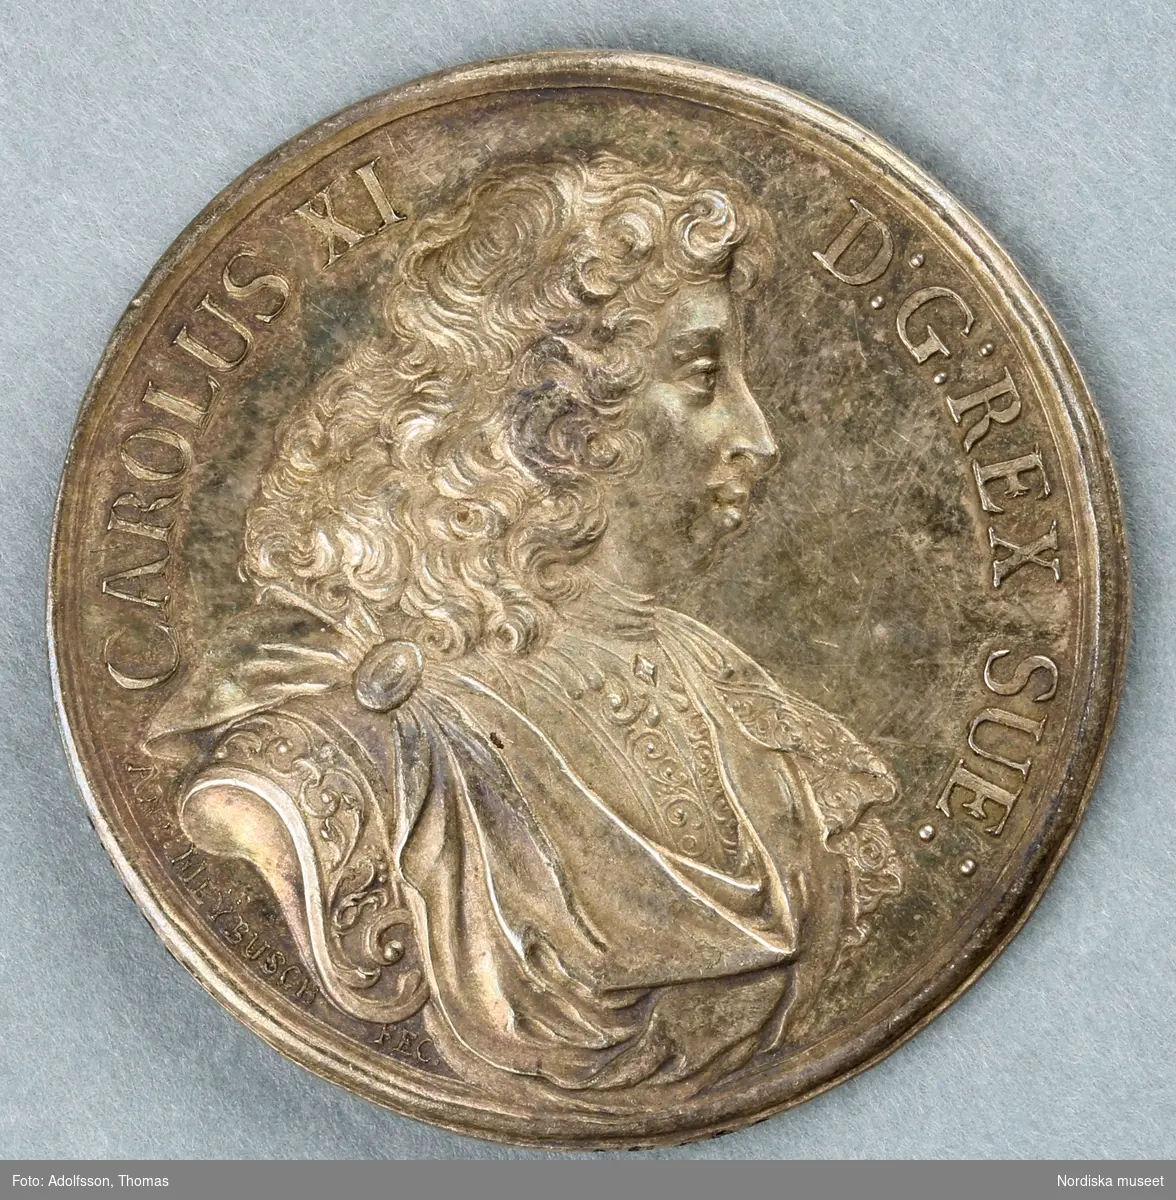 Drottning av Sverige, regent 1680-1697